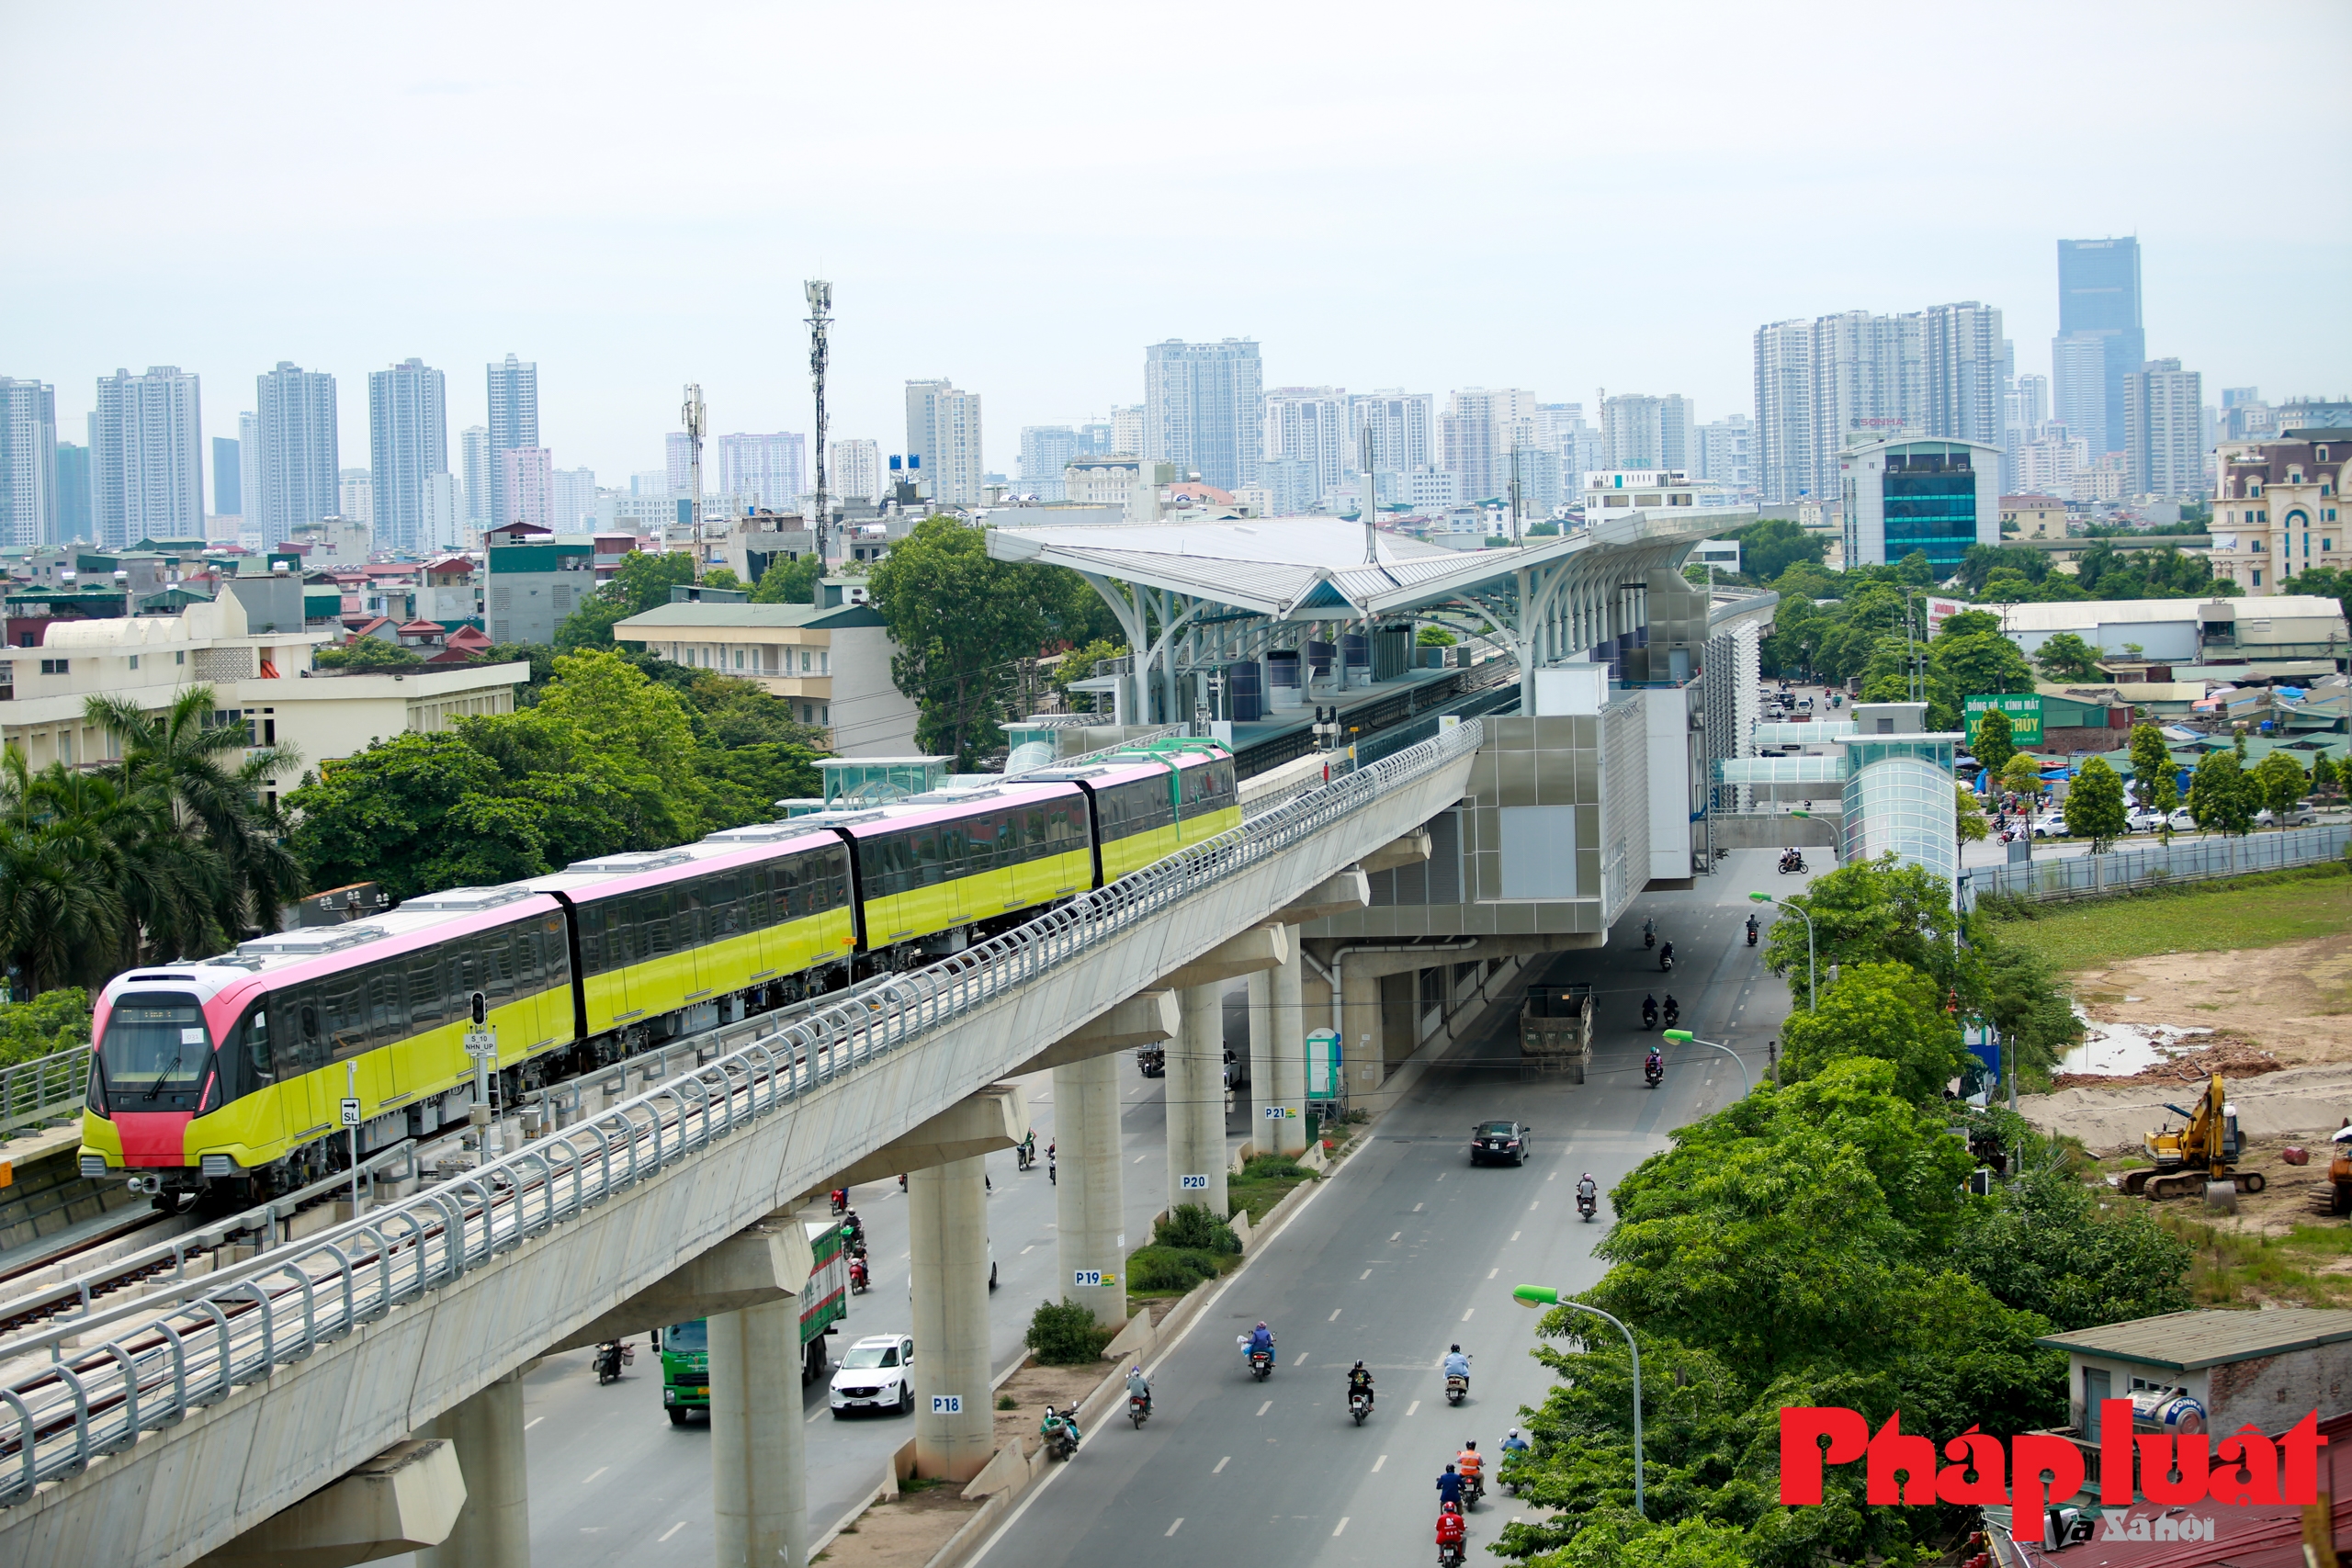 Những hình ảnh chạy thử tàu Metro Nhổn - Ga Hà Nội